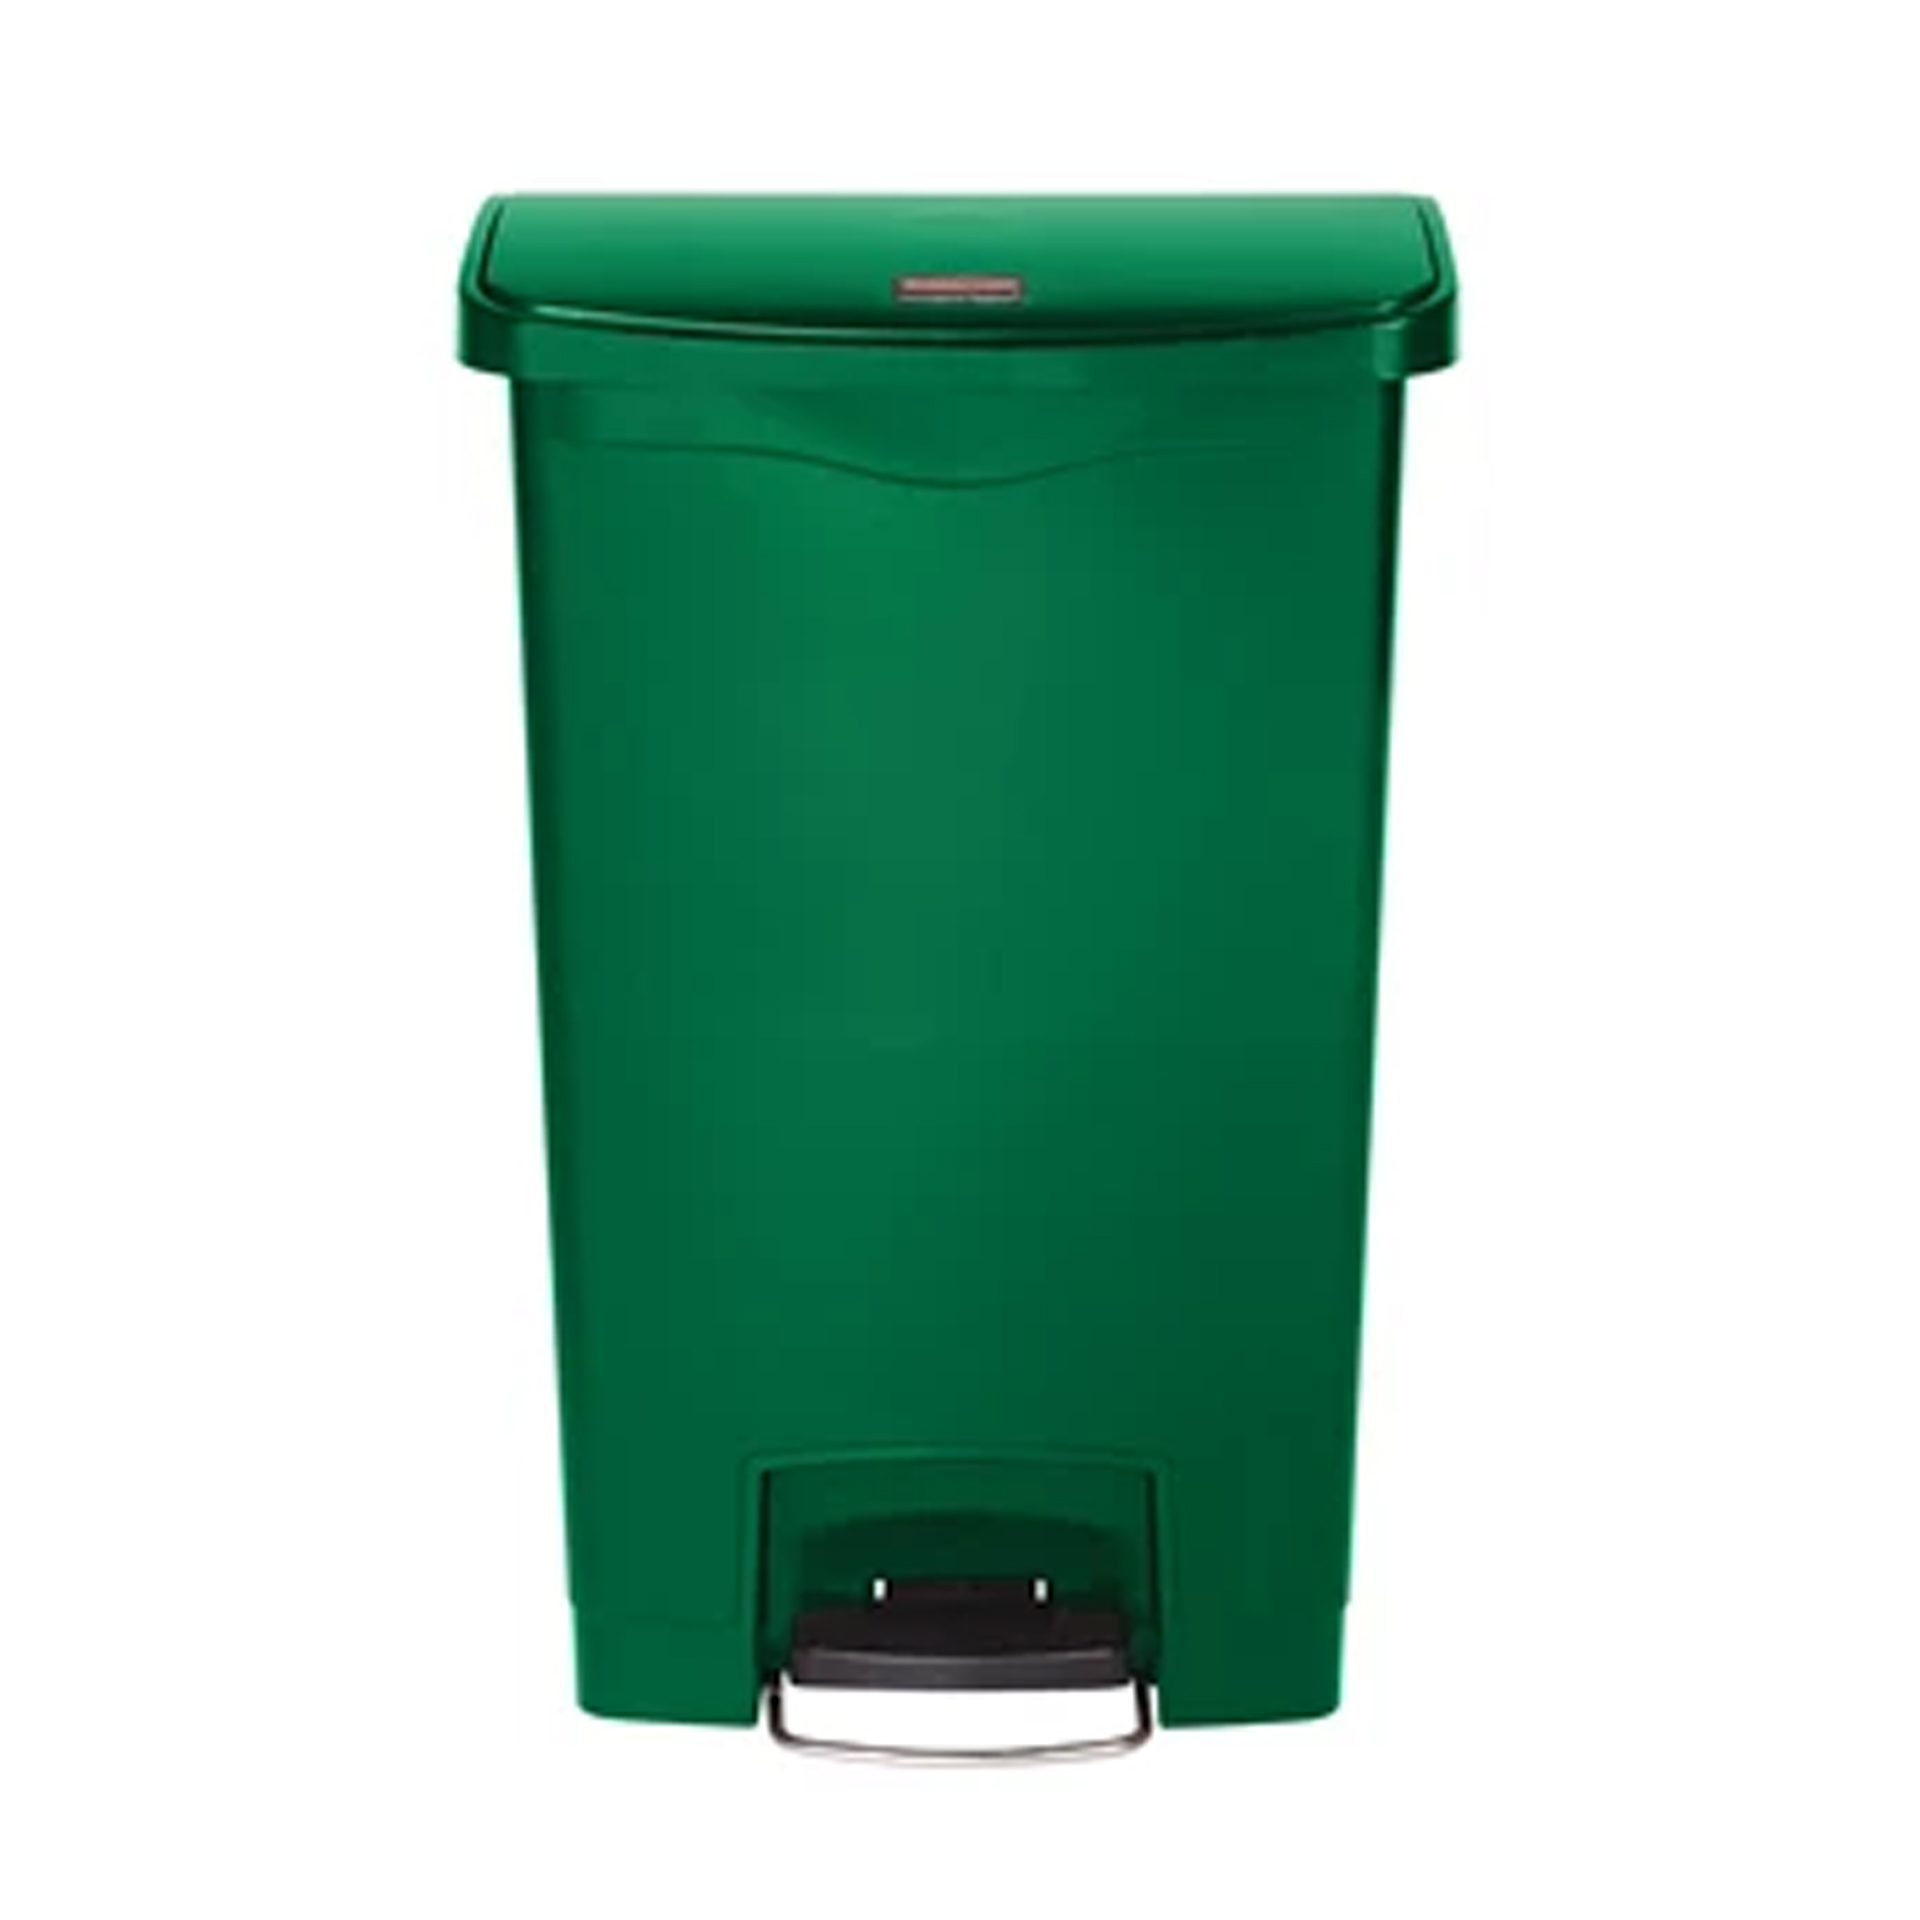 ถังขยะแบบเท้าเหยียบ Slim Jim® Step-On Container ขนาด 50 ลิตร สีเขียว